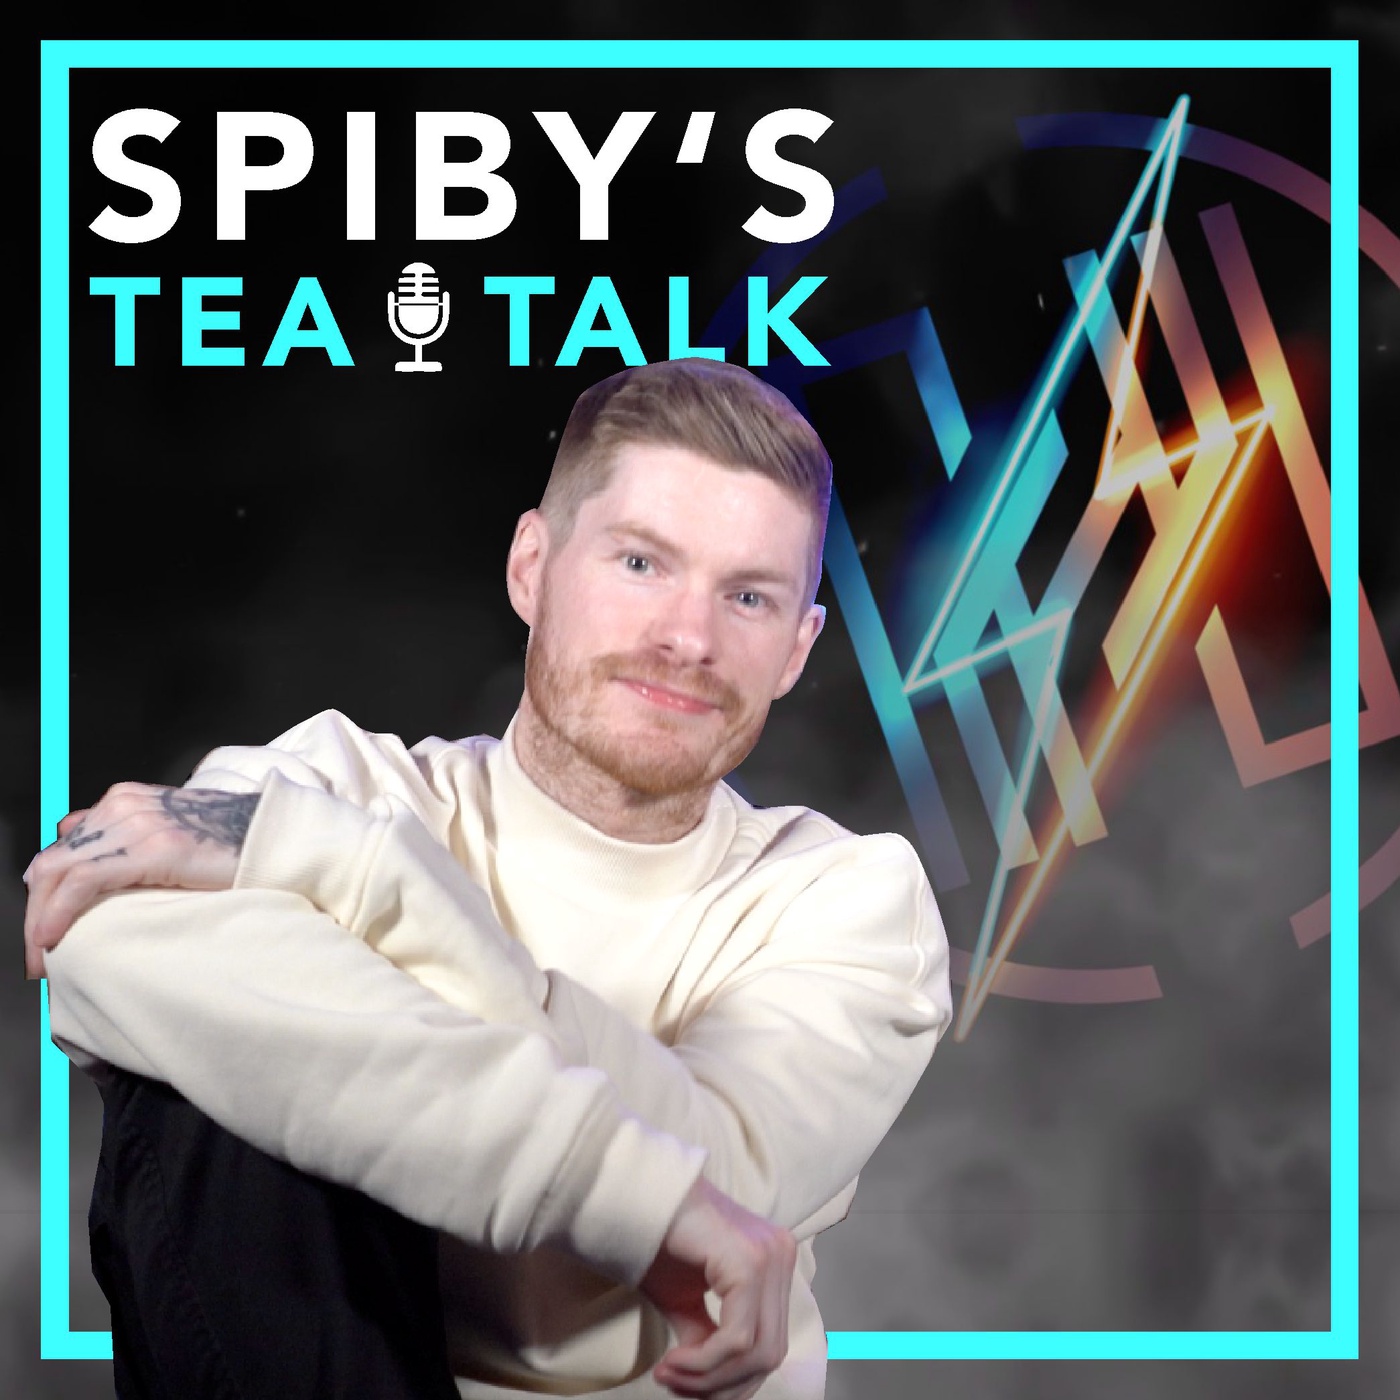 Spiby's Tea Talk